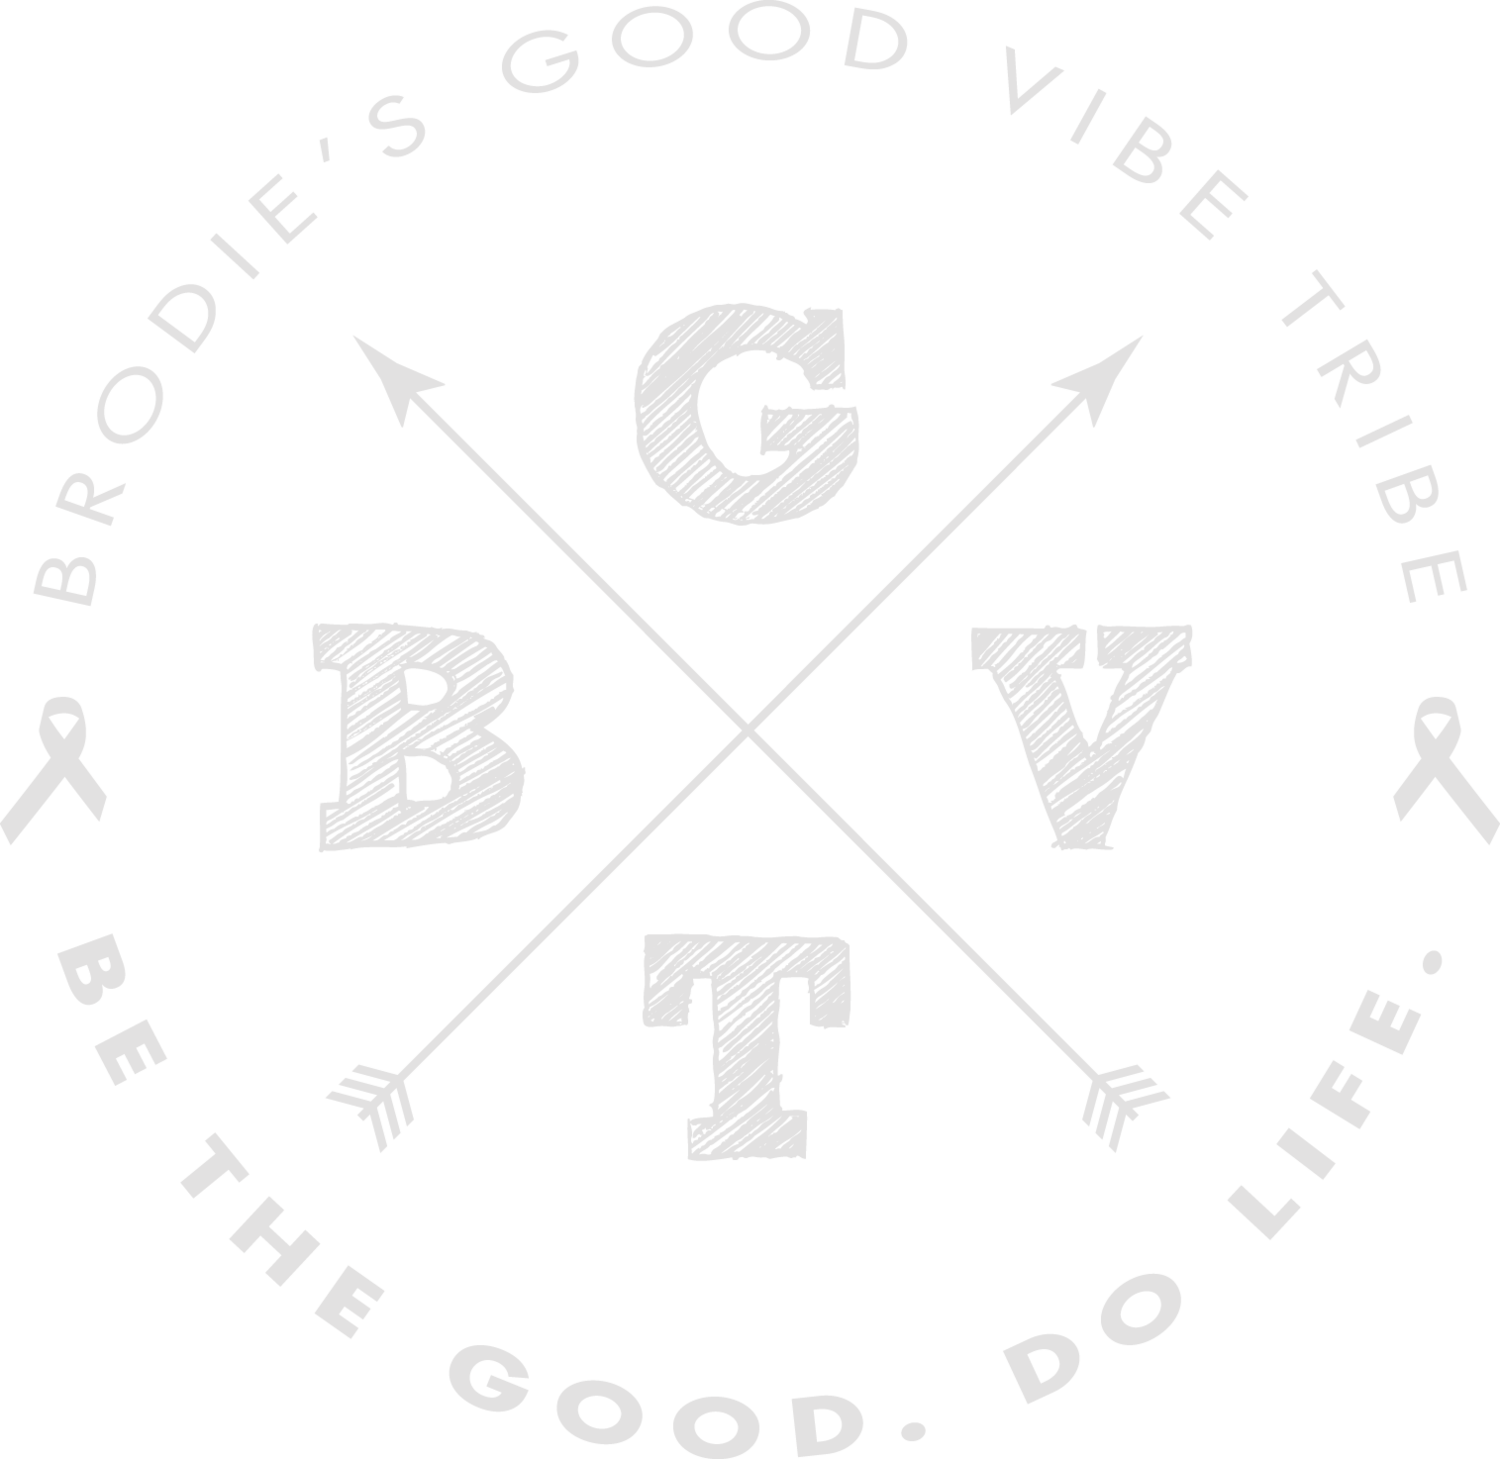 Brodie's Good Vibe Tribe